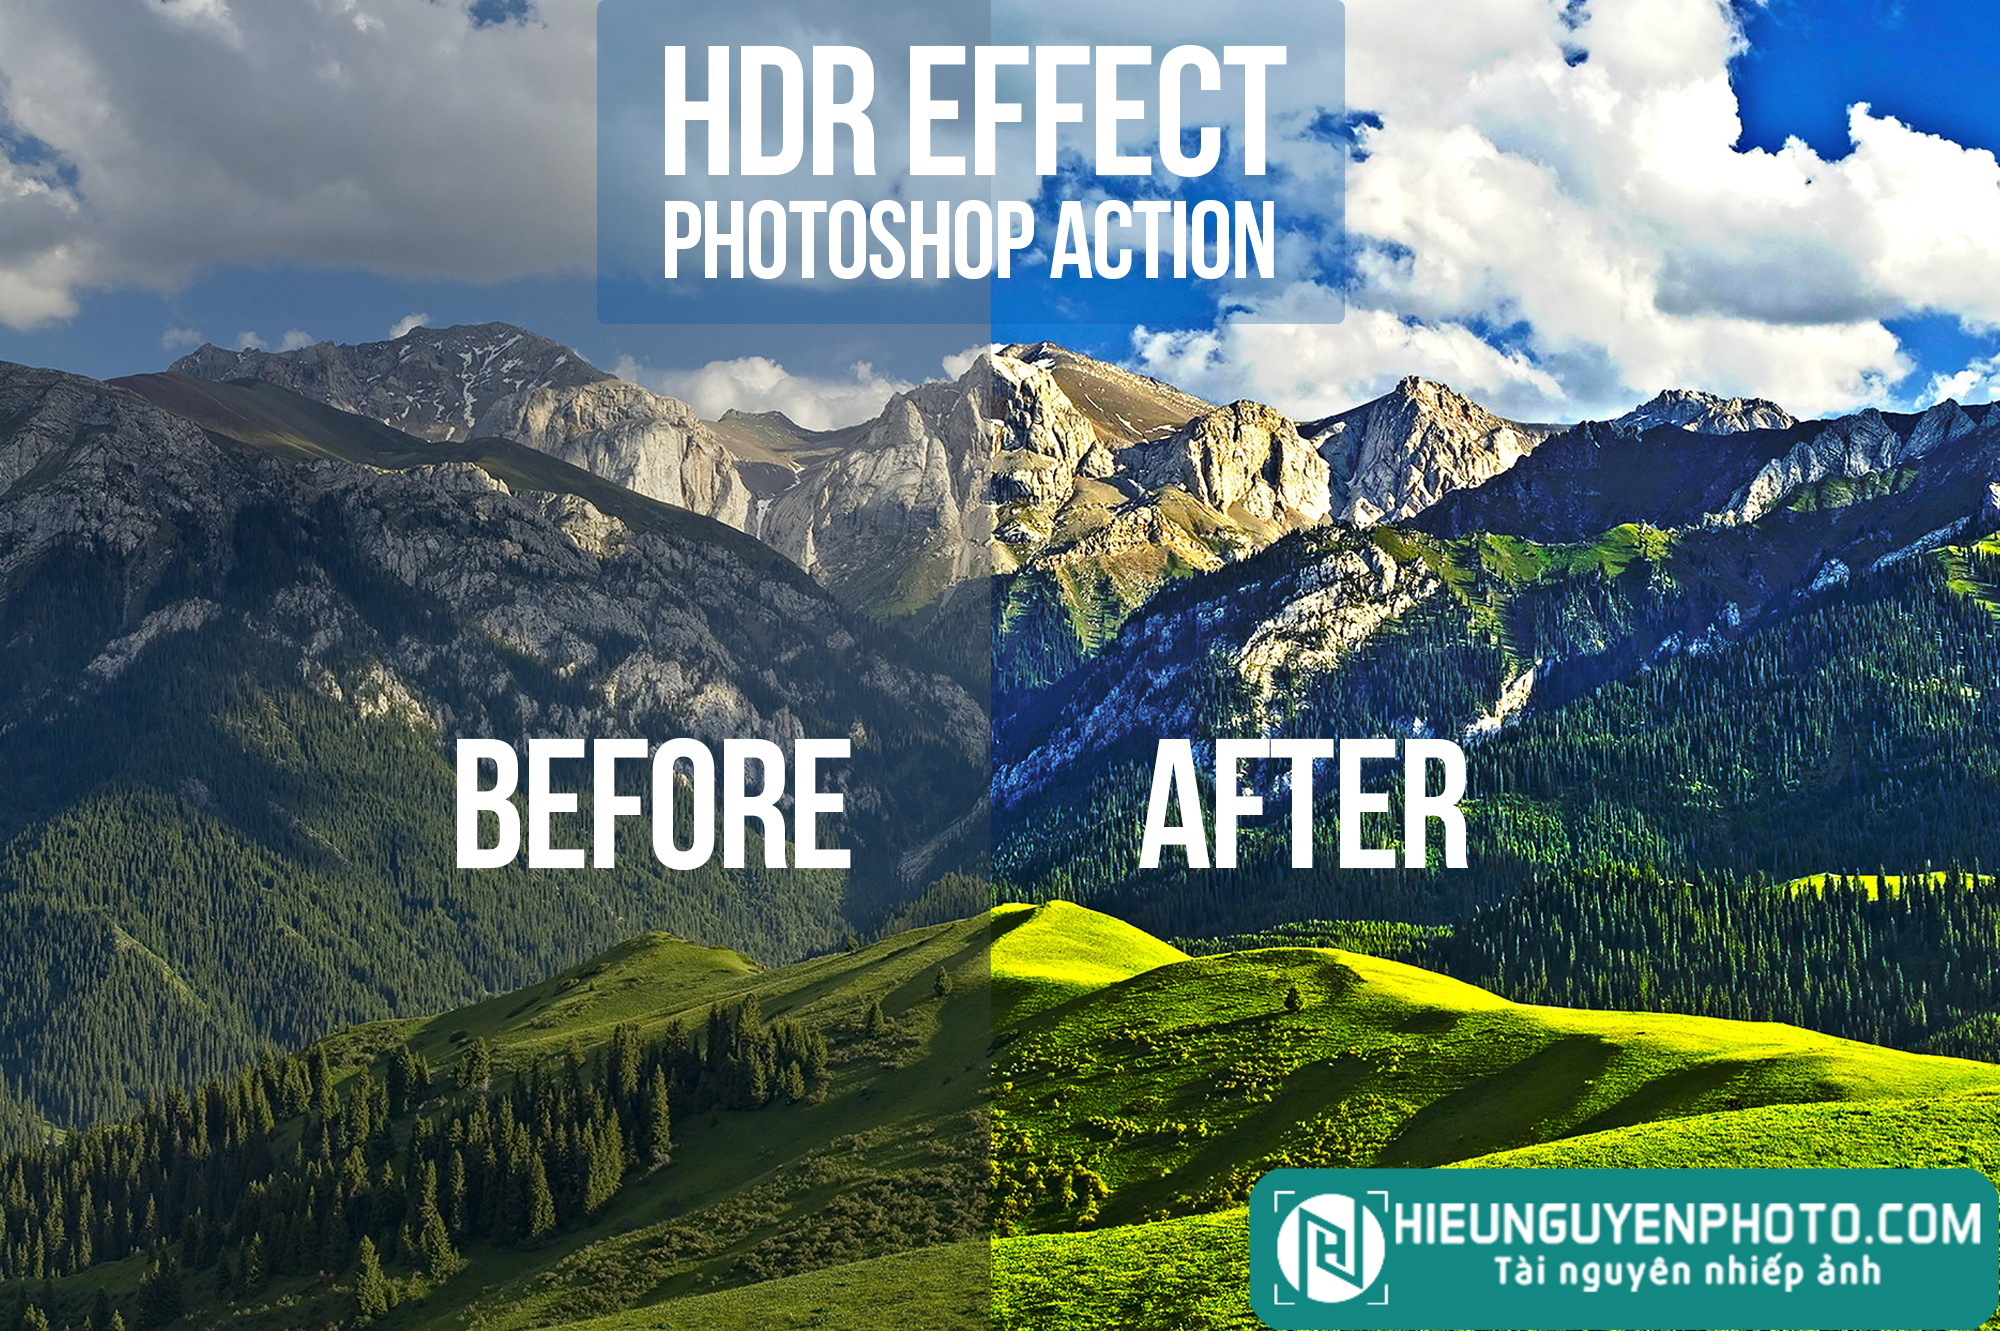 Action tạo hiệu ứng ảnh HDR cực đẹp